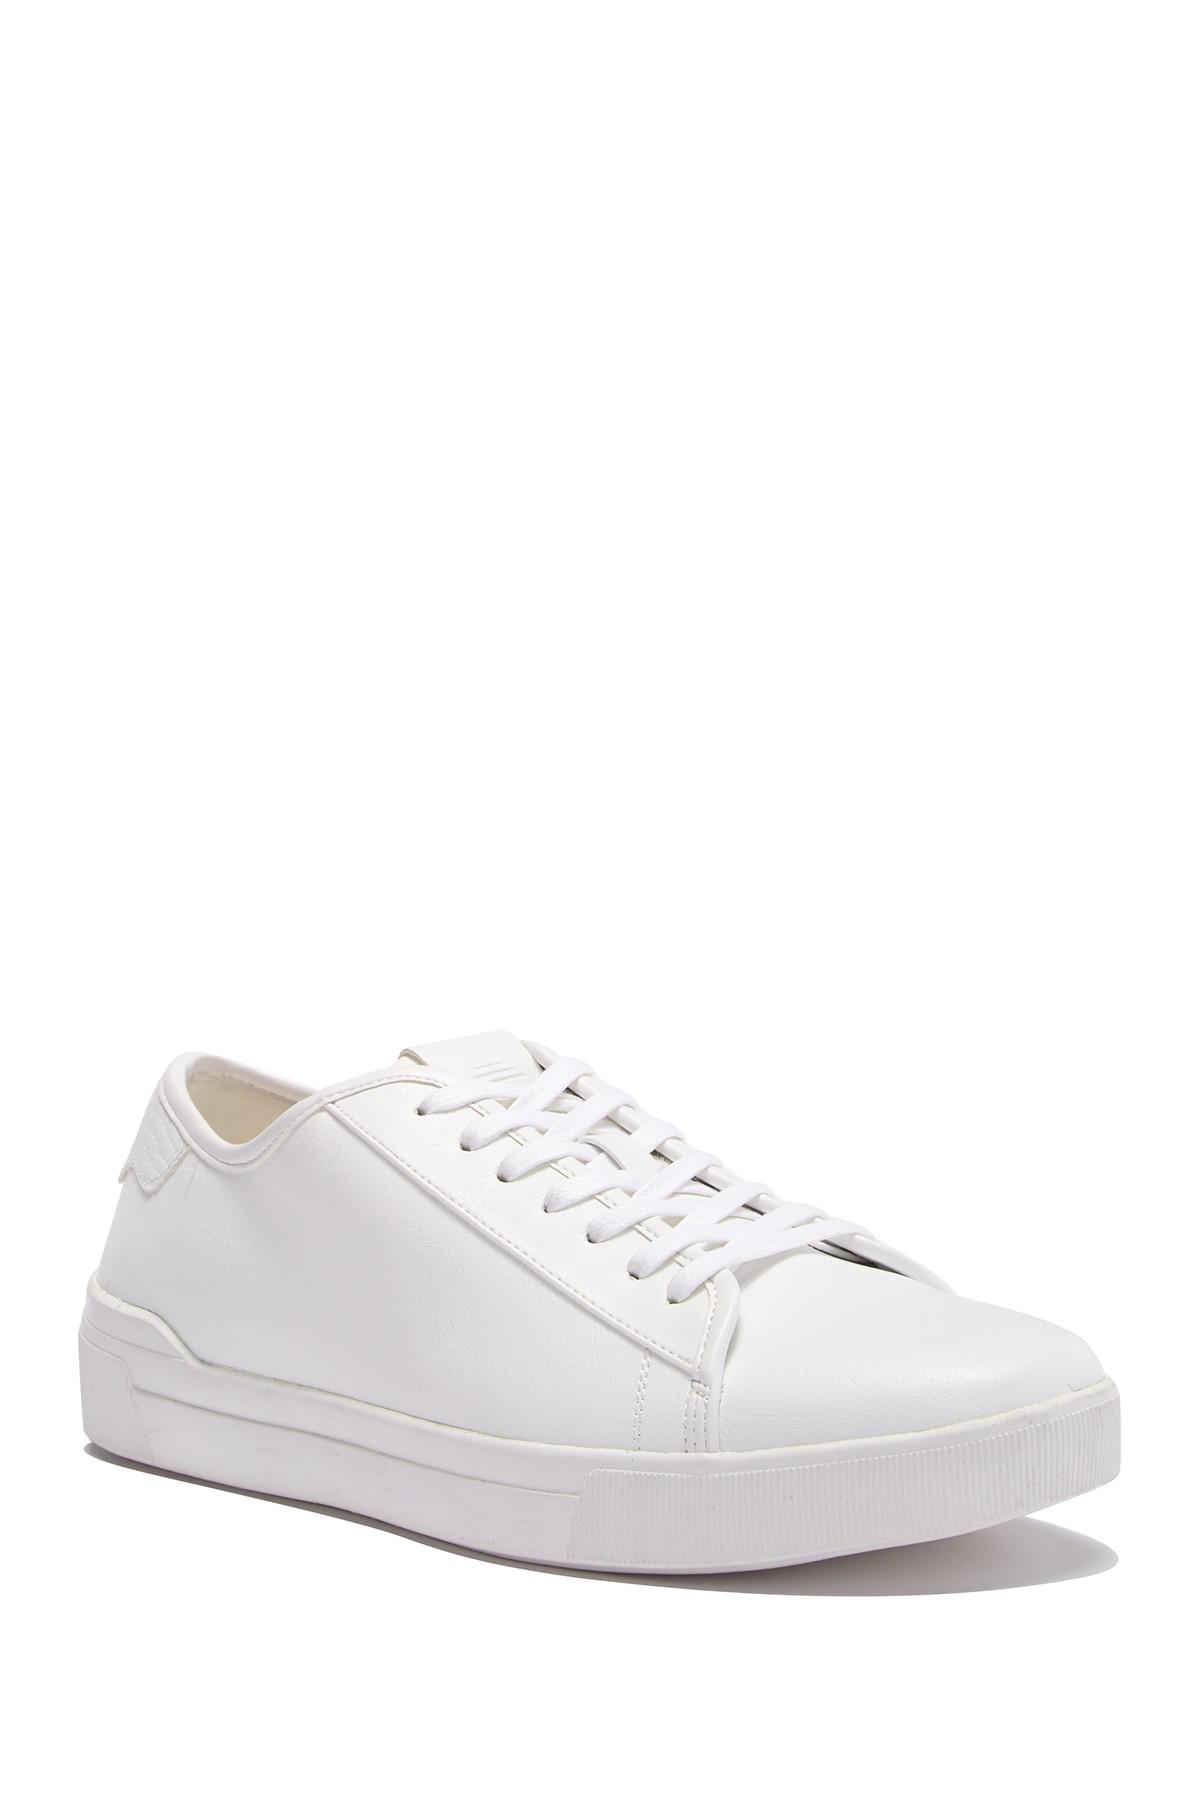 ALDO Revedin Leather Sneaker in White 